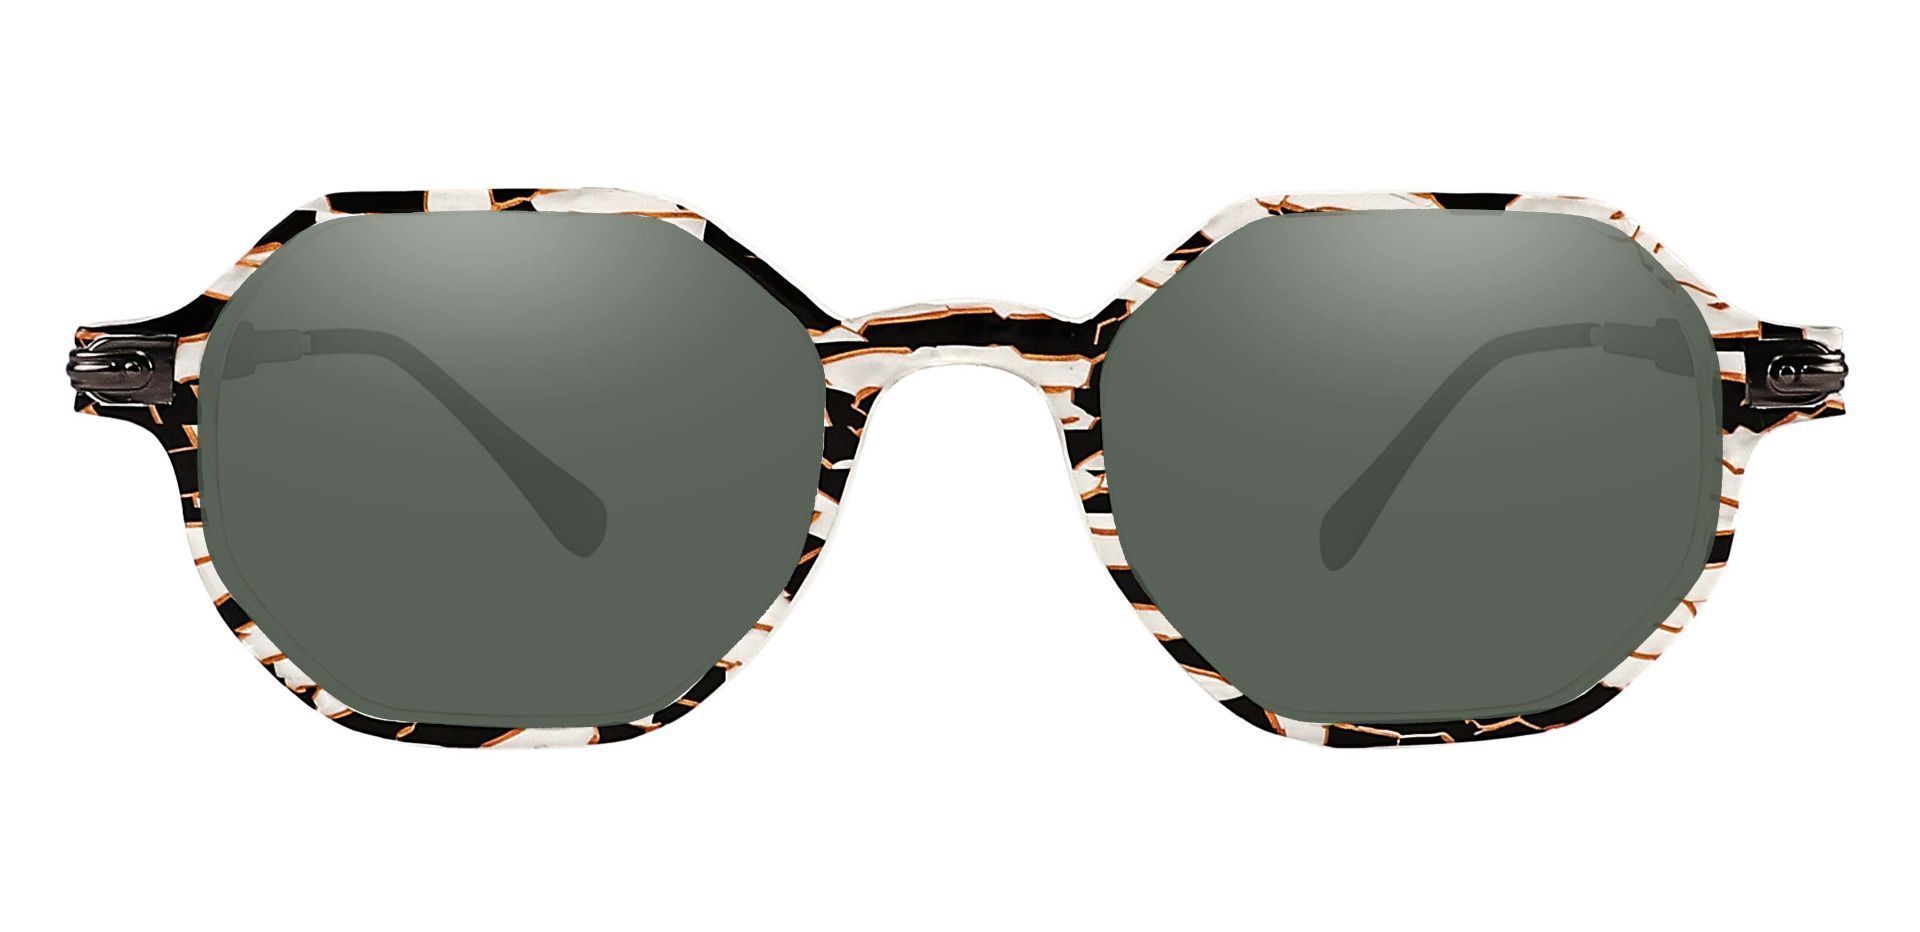 Bogart Geometric Prescription Sunglasses - Floral Frame With Green Lenses